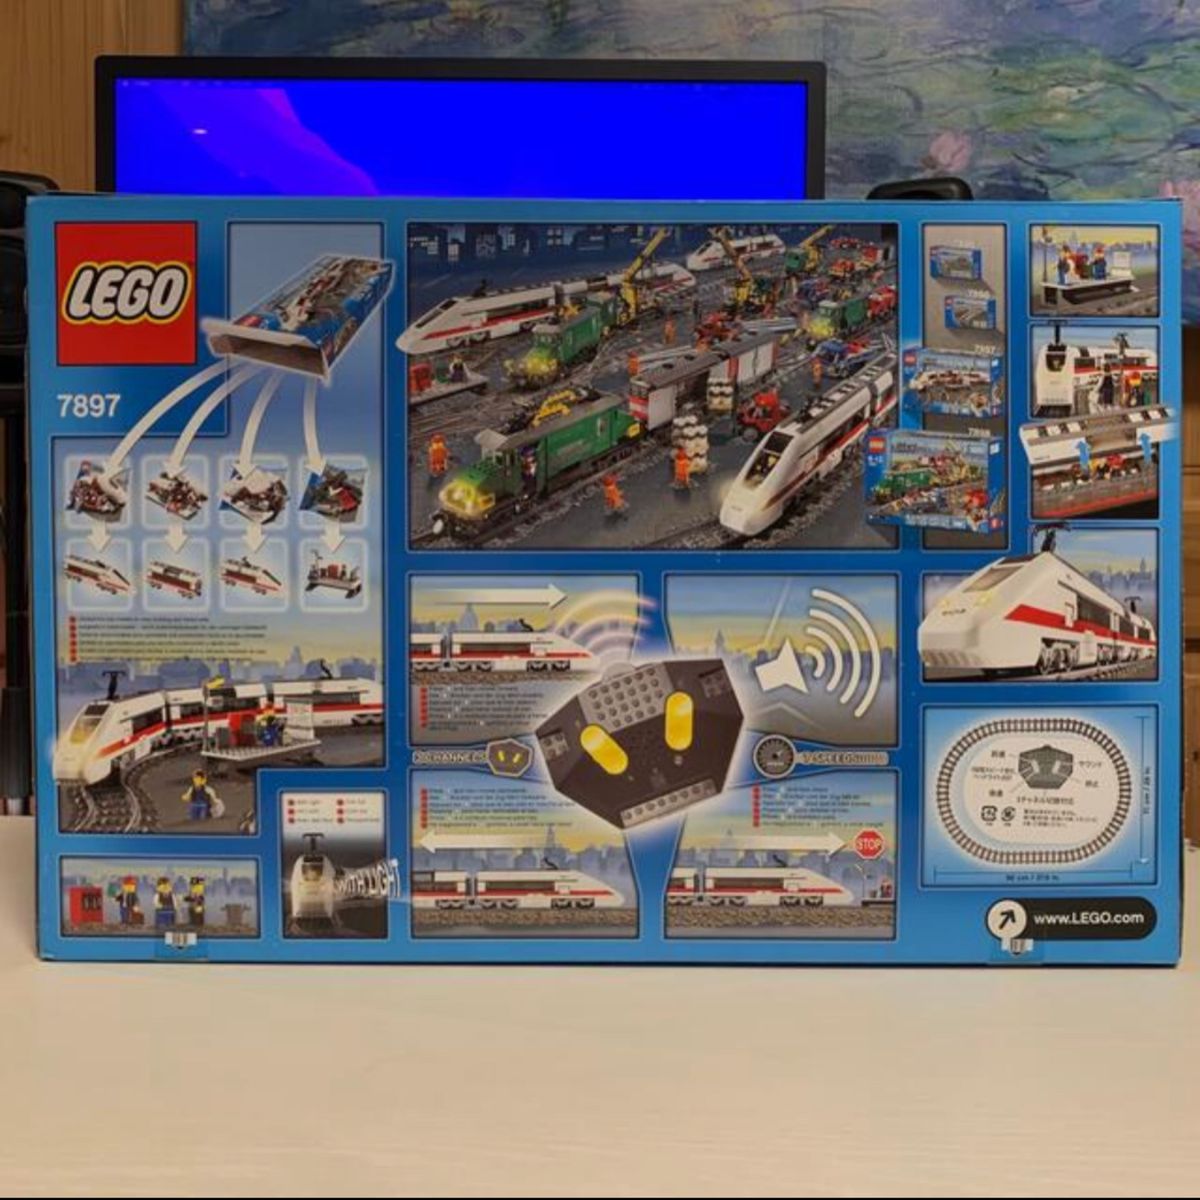 LEGO レゴシティ 7897 レゴエクスプレス